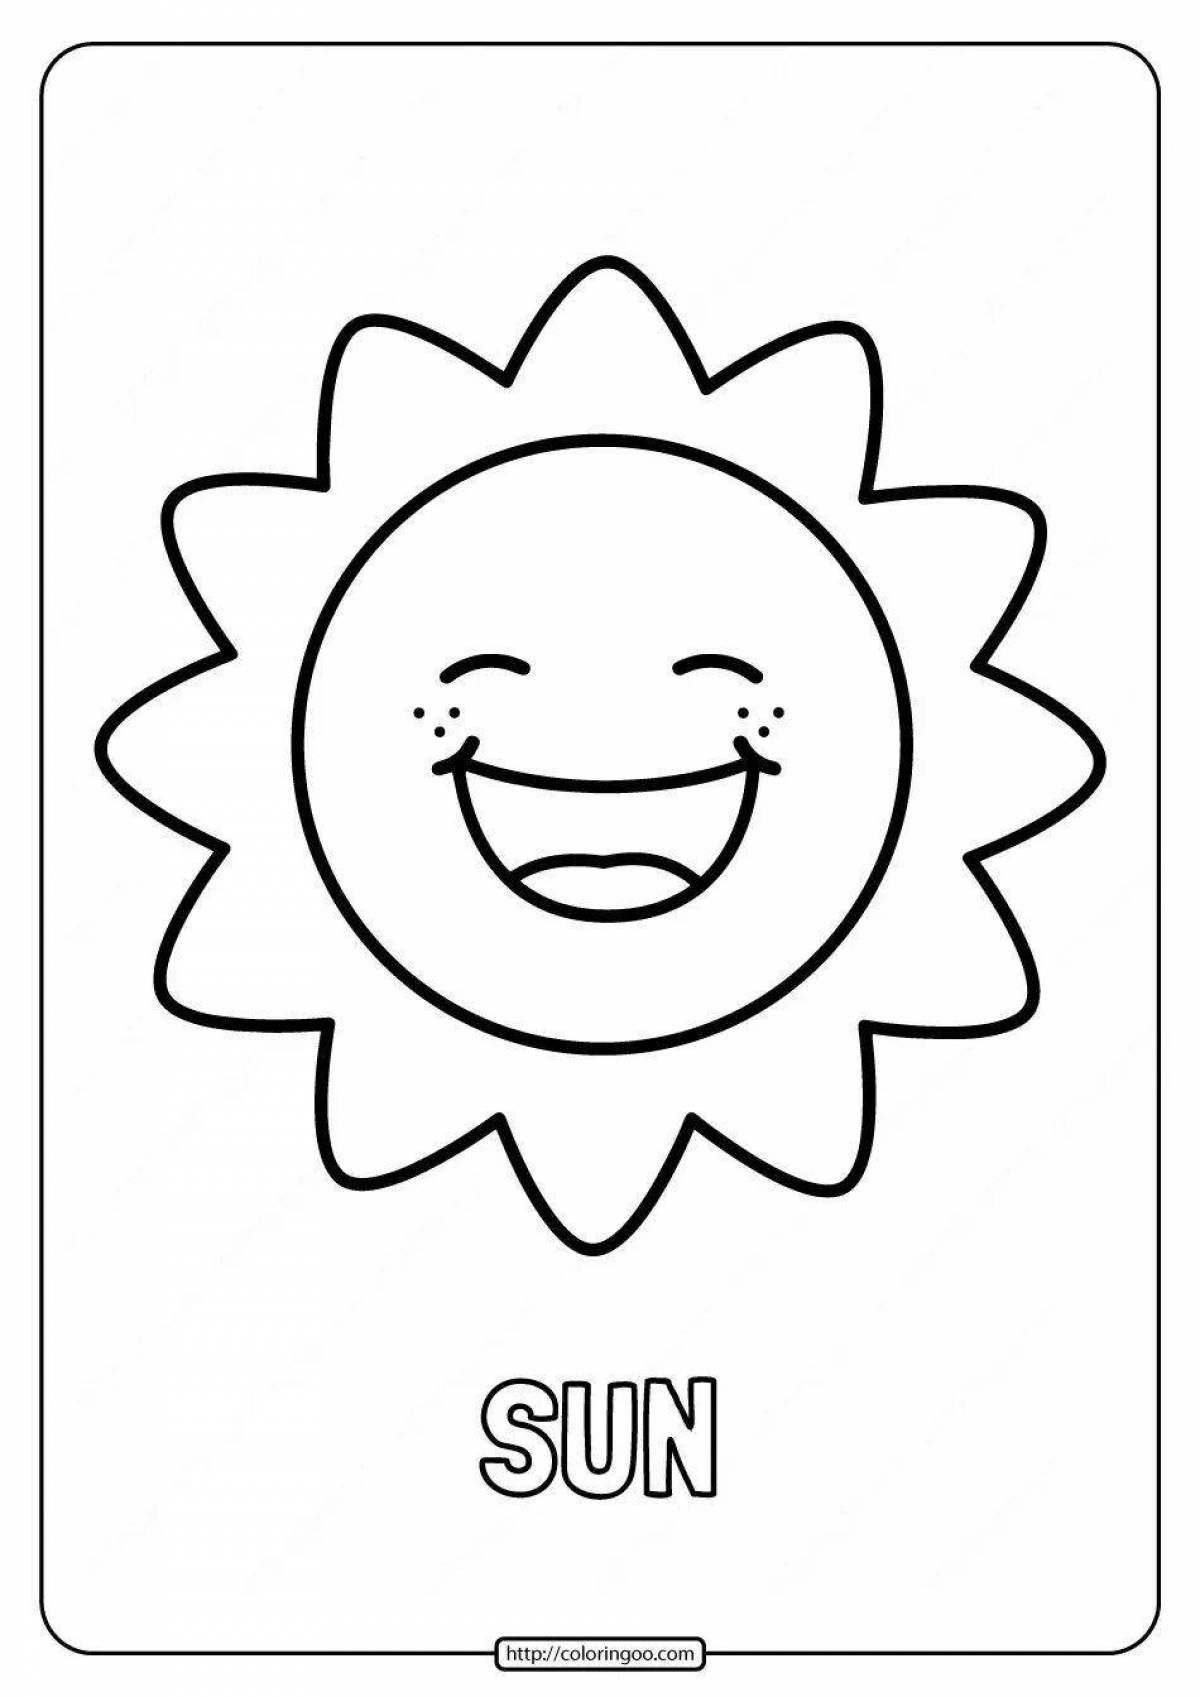 Сияющая раскраска солнышко для детей 3-4 лет